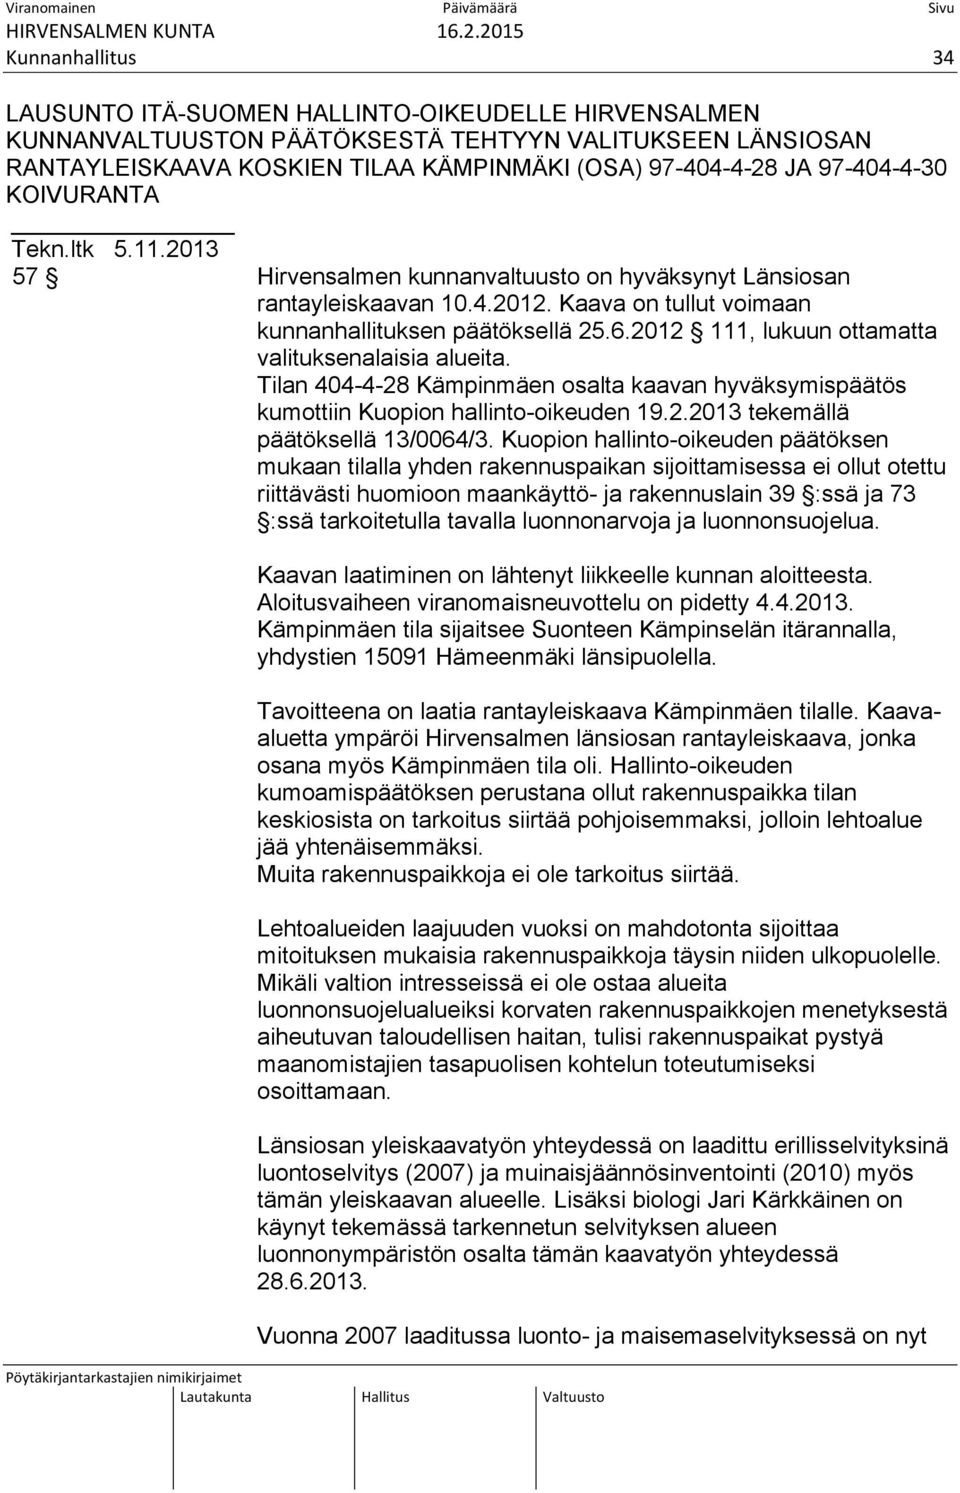 2012 111, lukuun ottamatta valituksenalaisia alueita. Tilan 404-4-28 Kämpinmäen osalta kaavan hyväksymispäätös kumottiin Kuopion hallinto-oikeuden 19.2.2013 tekemällä päätöksellä 13/0064/3.